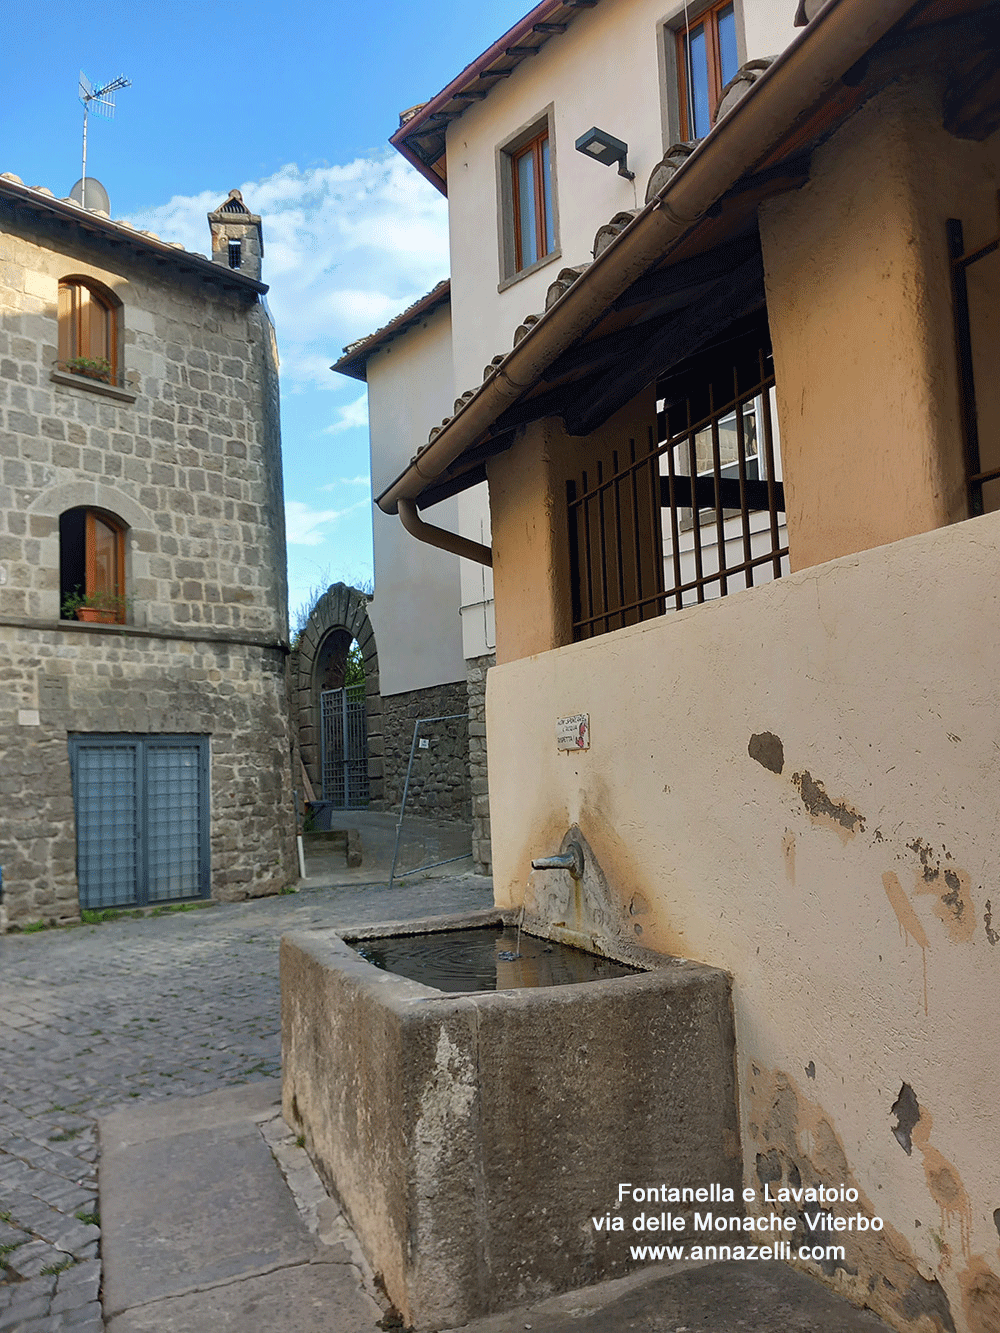 lavatoio e fontanella a via delle monache viterbo info e foto anna zelli